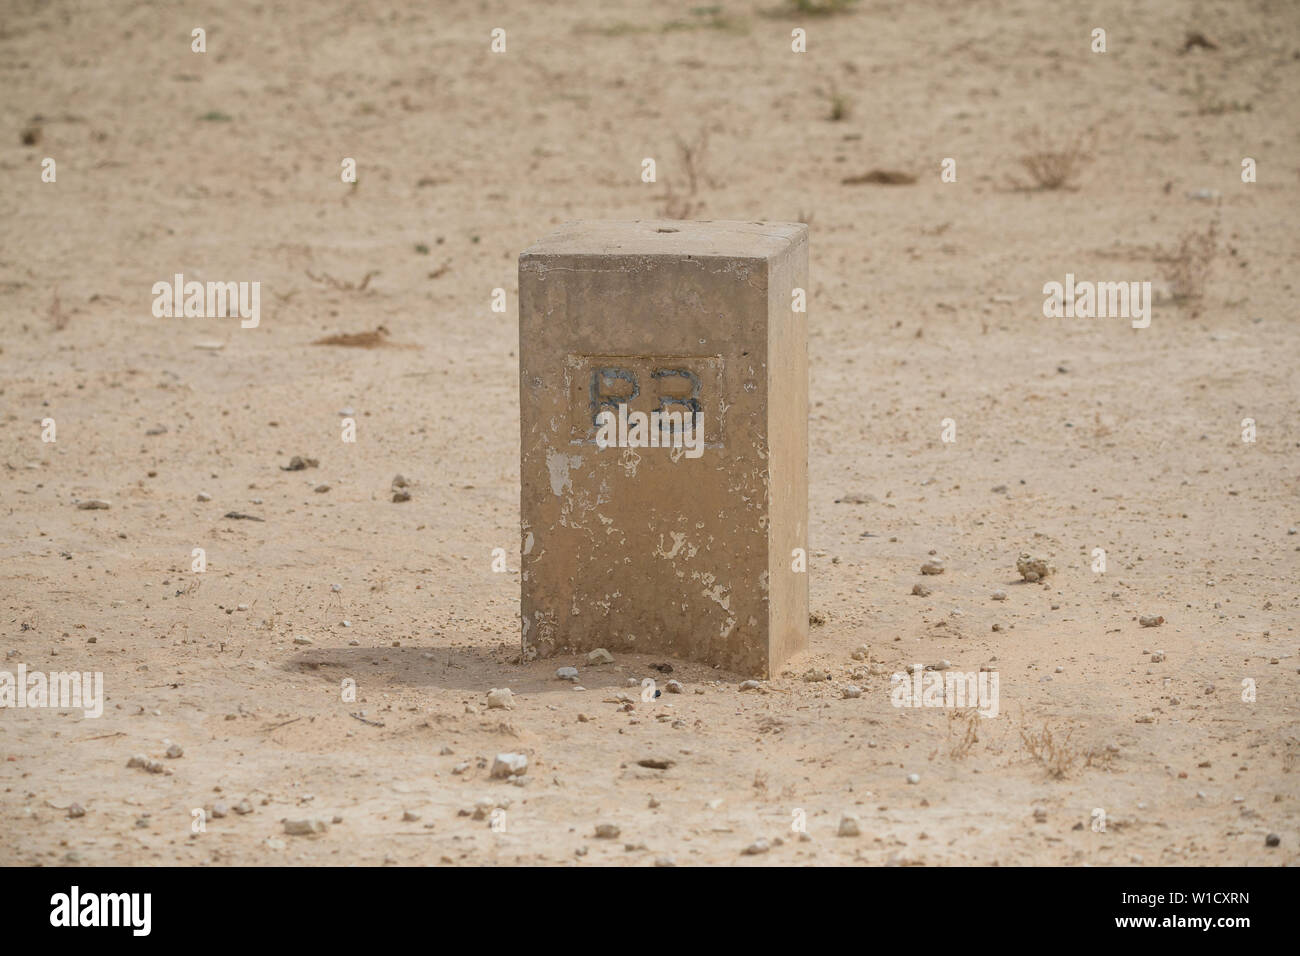 Un marcador de piedra o hito que marca la frontera de la República de Botswana en la arena del desierto de Kalahari en el Parque Transfronterizo Kgalagadi, Sudáfrica Foto de stock